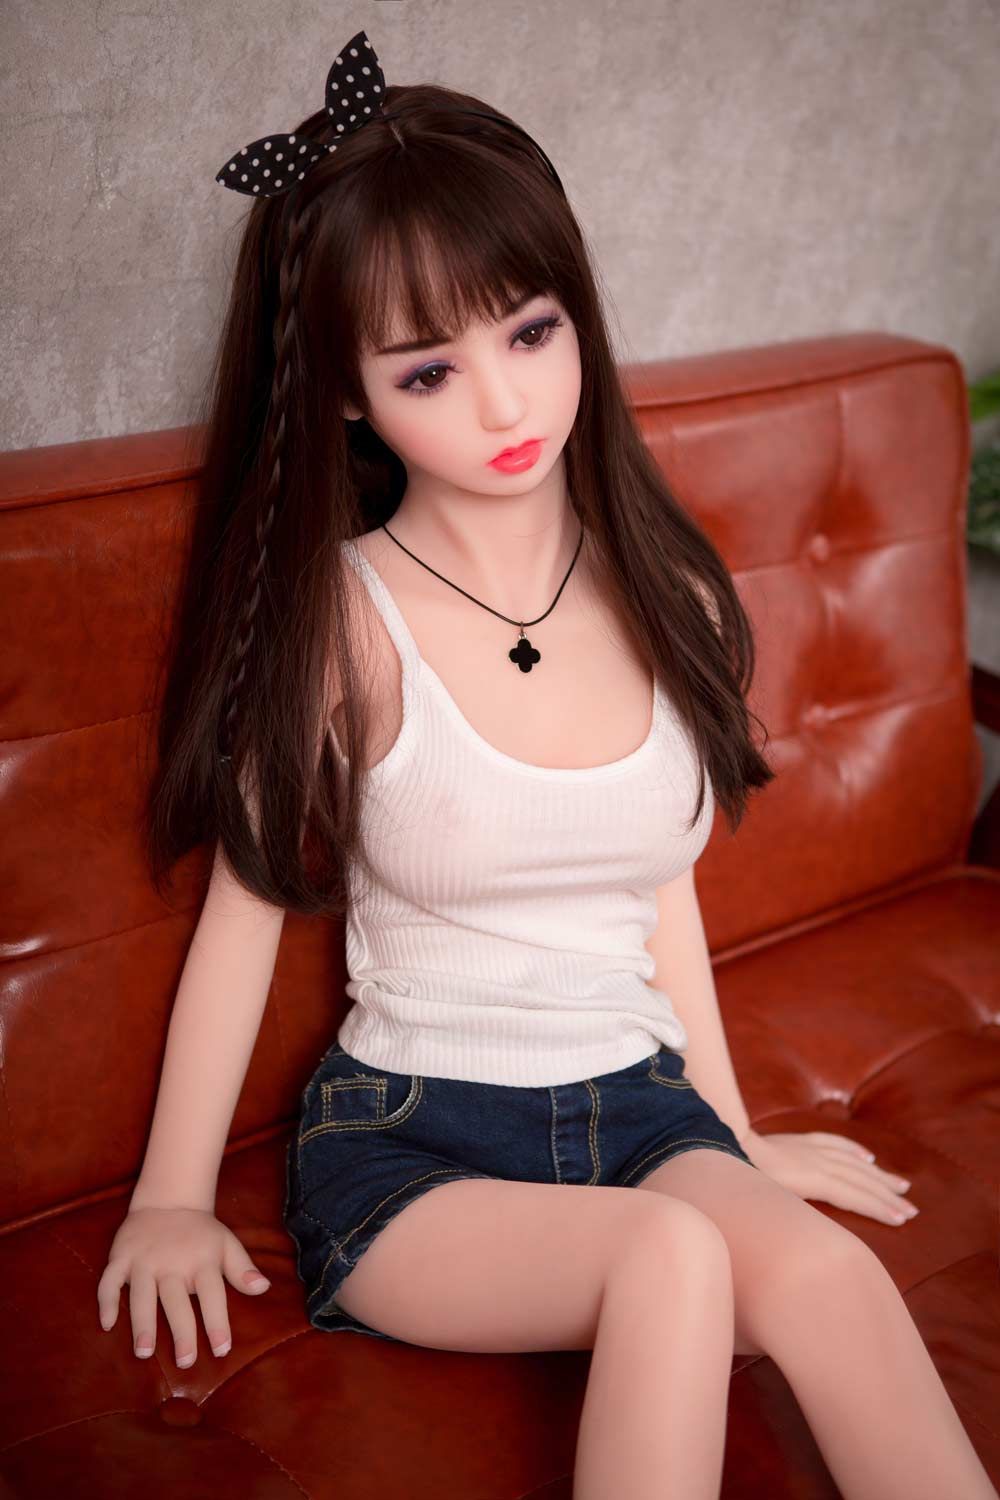 mini sex doll9 5